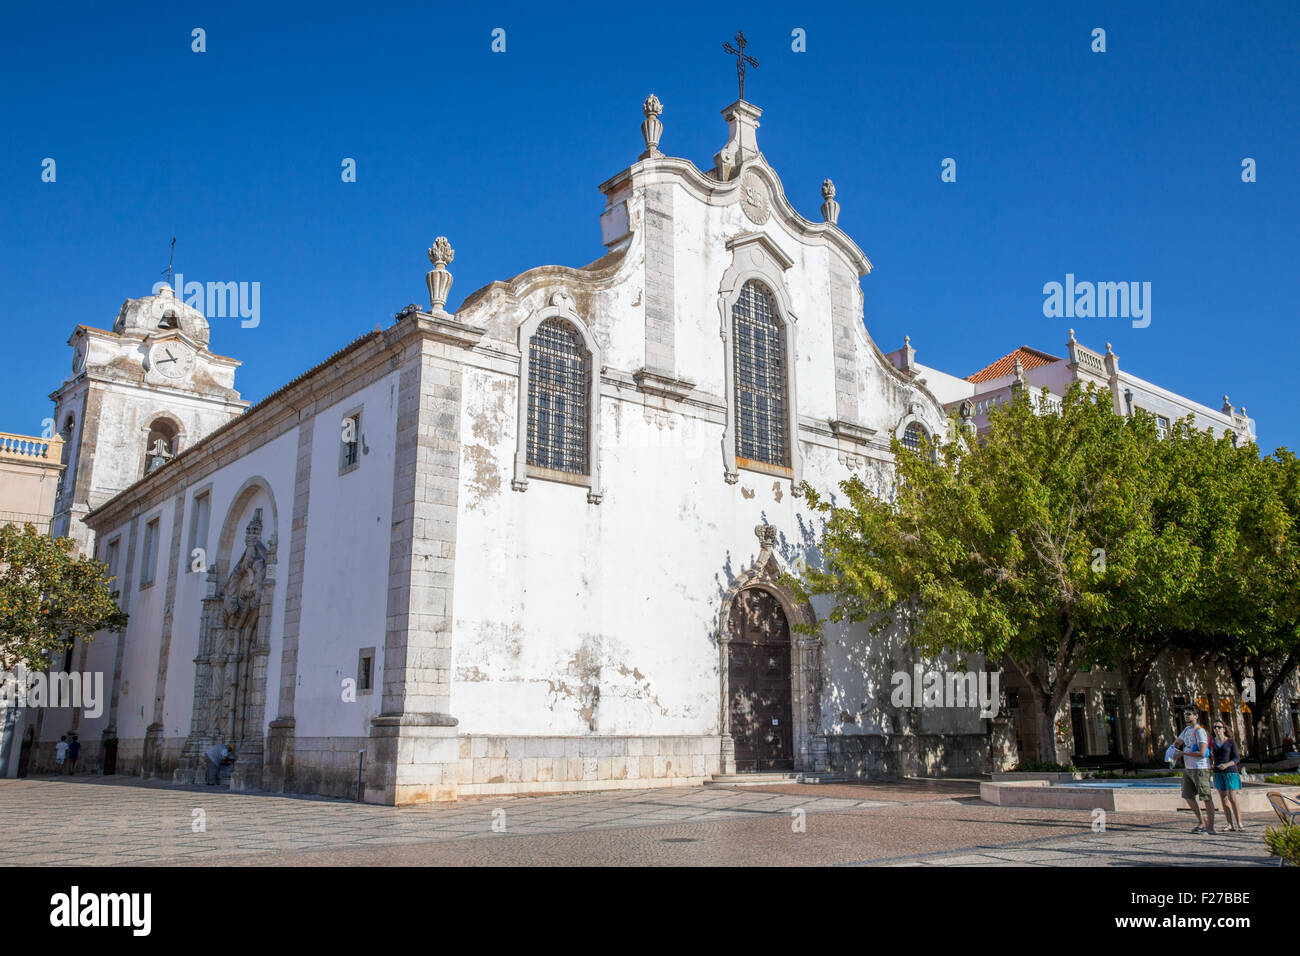 Igreja de S. Juliao, Chiesa di San Giuliano, Praca de Bocage, città di Setubal, Portogallo Foto Stock